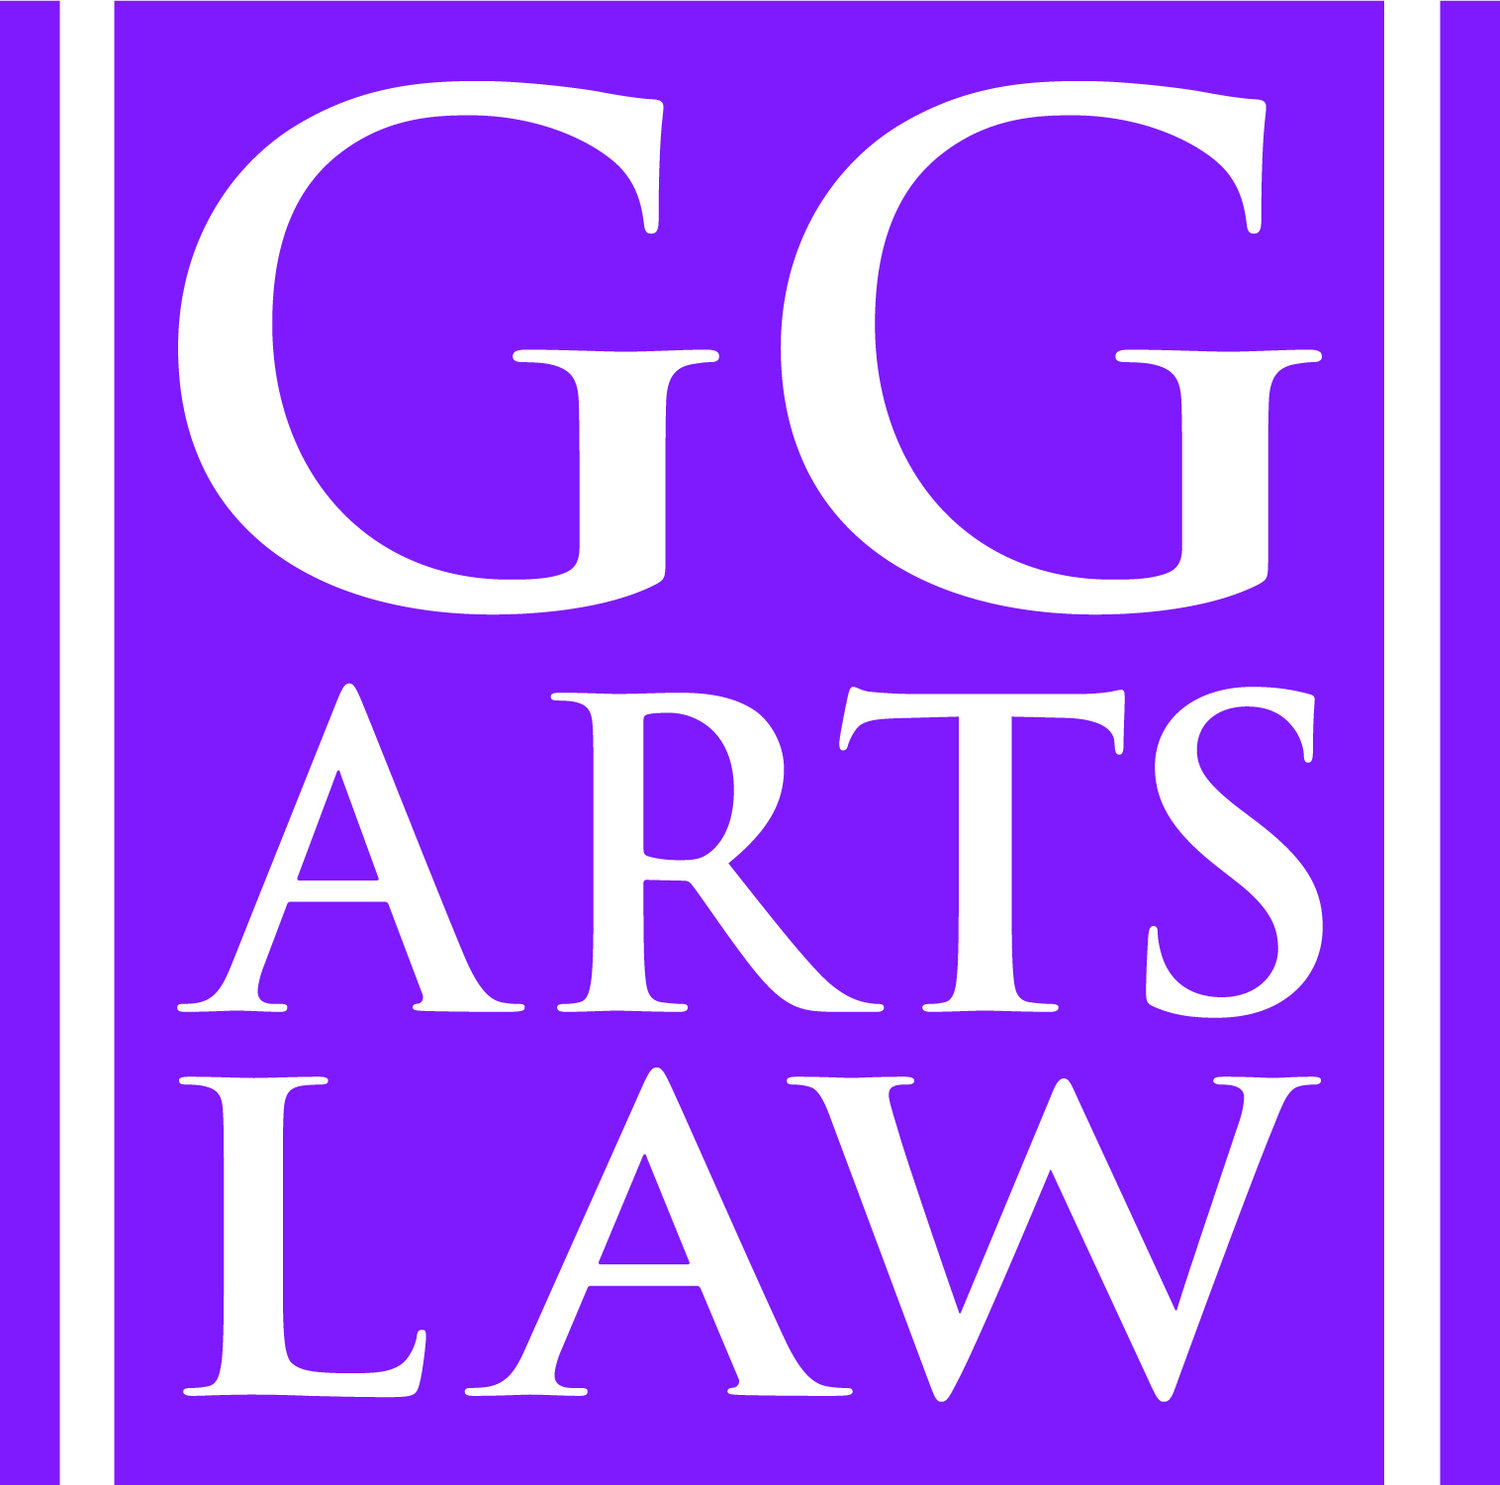 www.ggartslaw.com